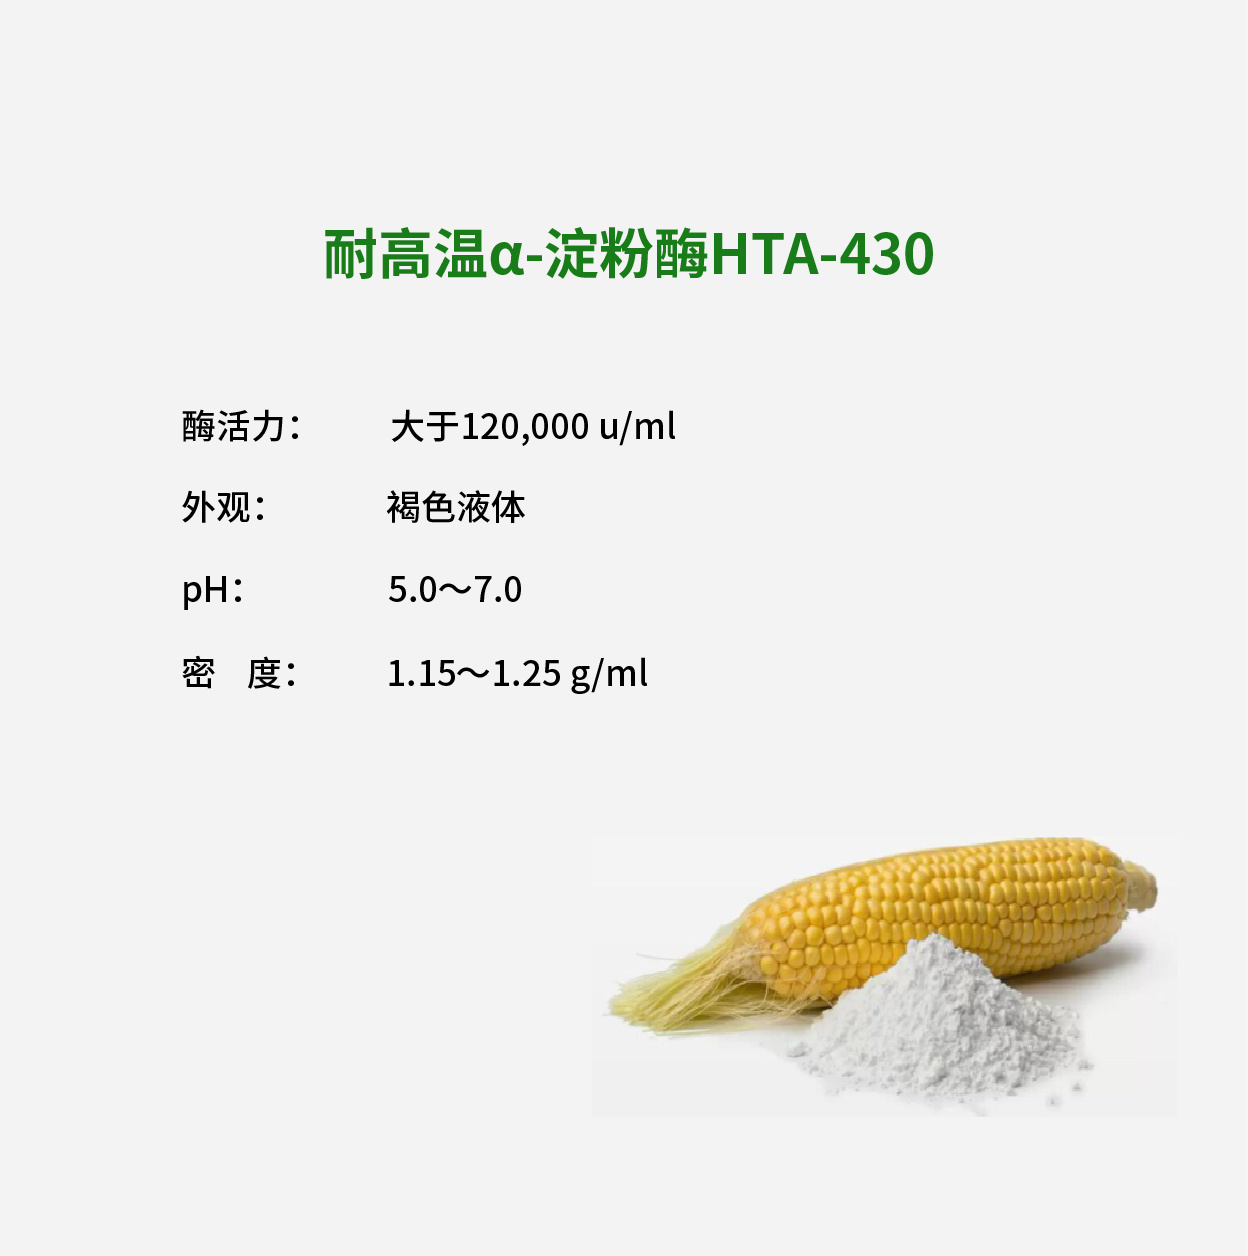 耐高温α-淀粉酶HTA-430